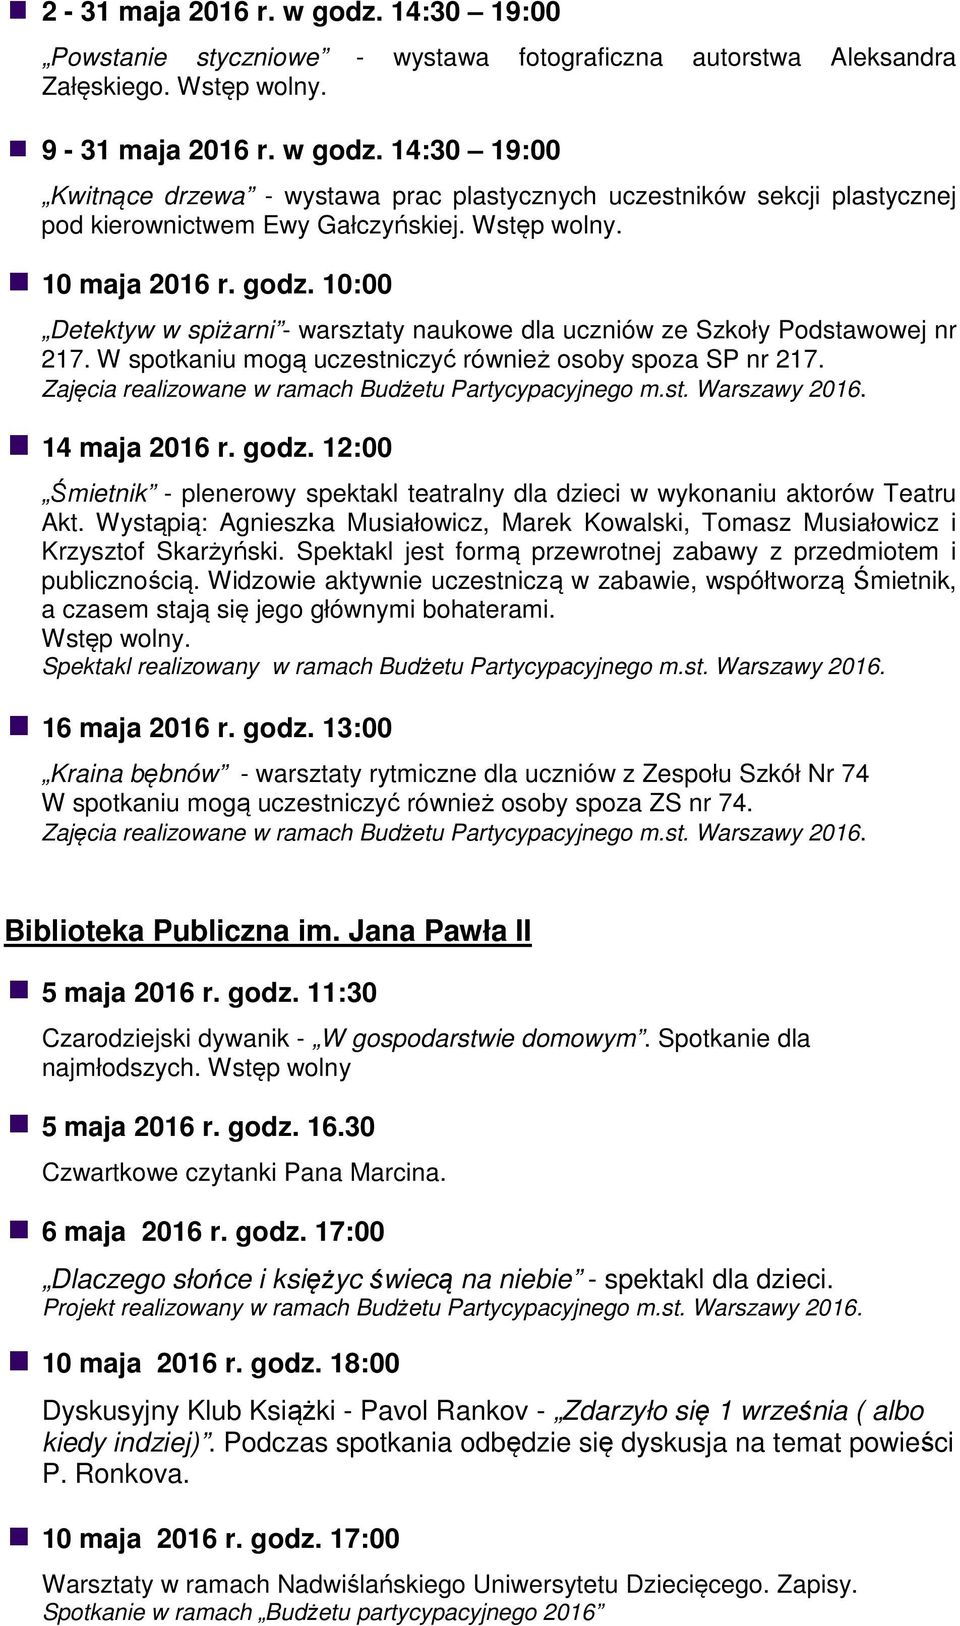 Zajęcia realizowane w ramach Budżetu Partycypacyjnego m.st. Warszawy 2016. 14 maja 2016 r. godz. 12:00 Śmietnik - plenerowy spektakl teatralny dla dzieci w wykonaniu aktorów Teatru Akt.